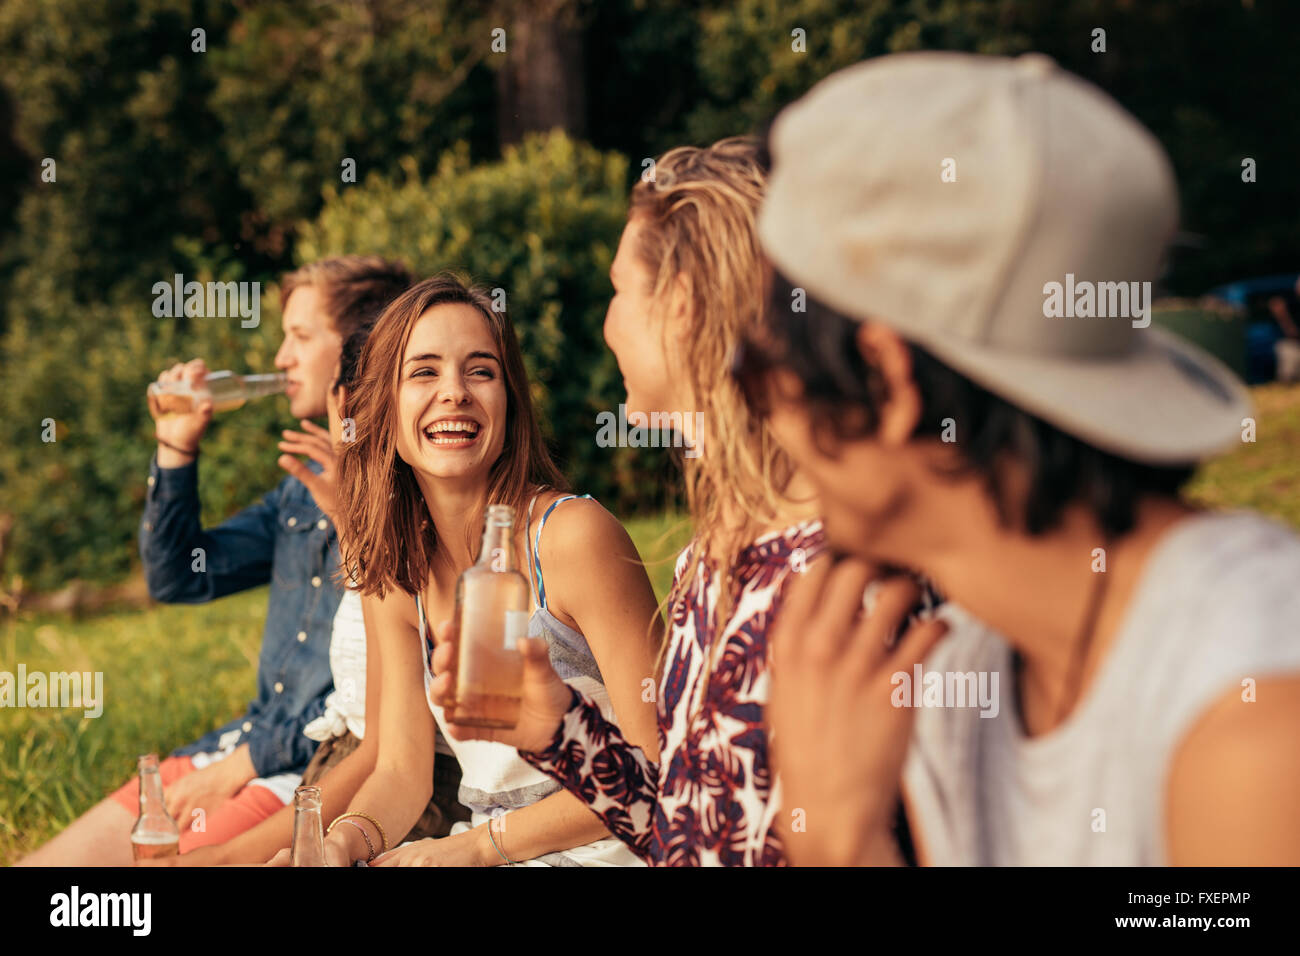 Porträt der glückliche junge Menschen sitzen an einem See mit Bier. Gruppe von Freunden rumhängen am See. Stockfoto